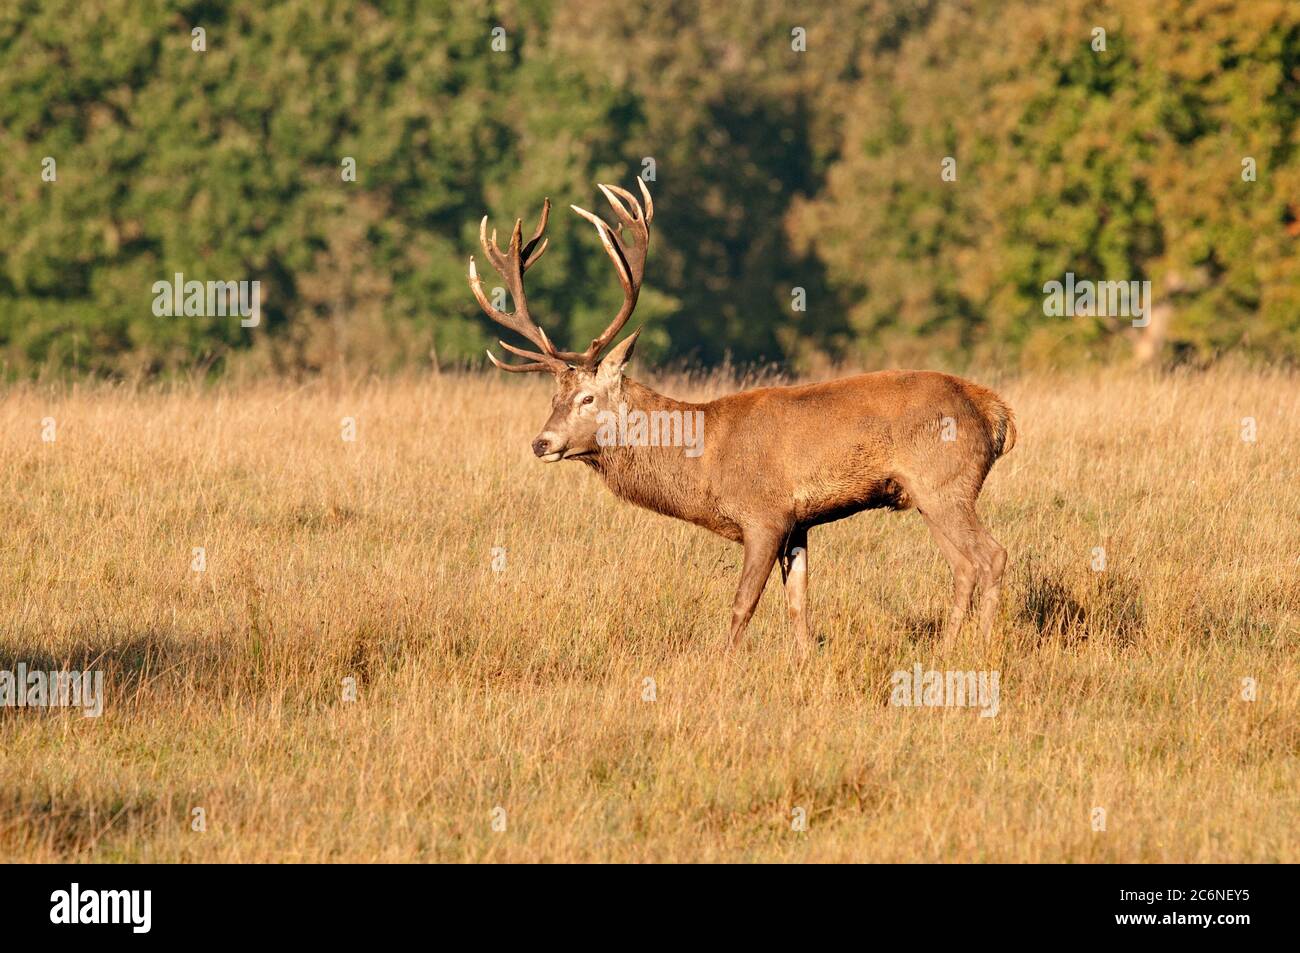 Red deer, Cervus elaphus, Stag in grassland, October, Suffolk Stock Photo